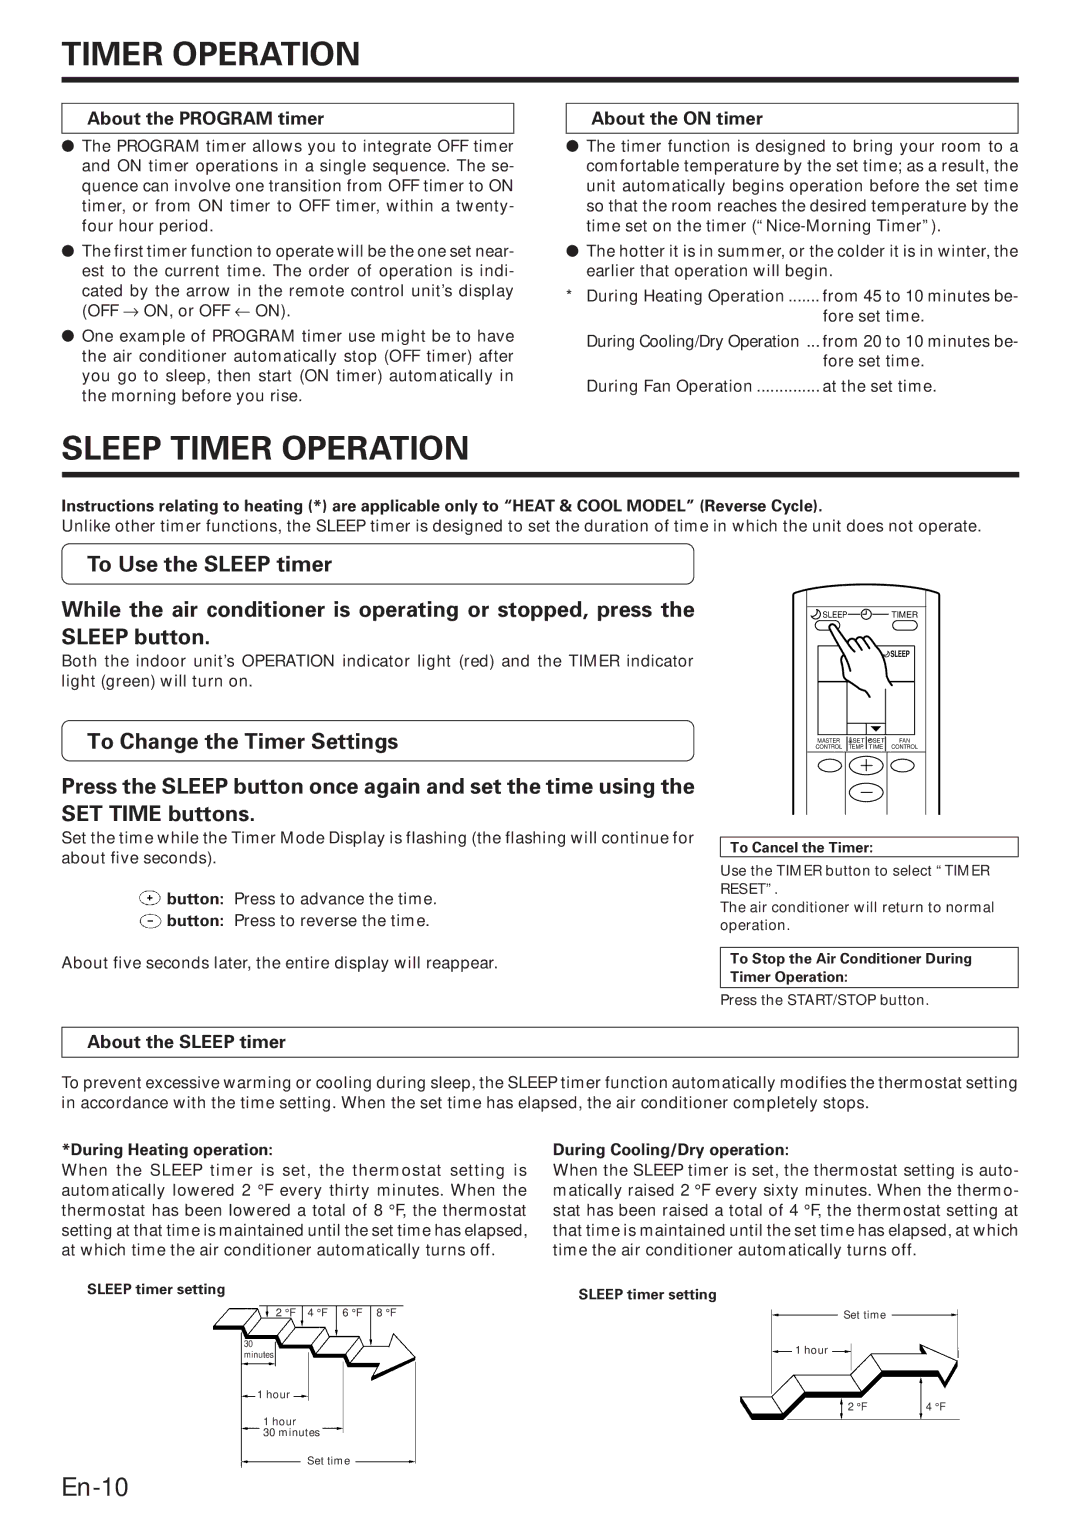 Fujitsu ABU22, ABO22 Sleep Timer Operation, About the Program timer, About the on timer, About the Sleep timer 